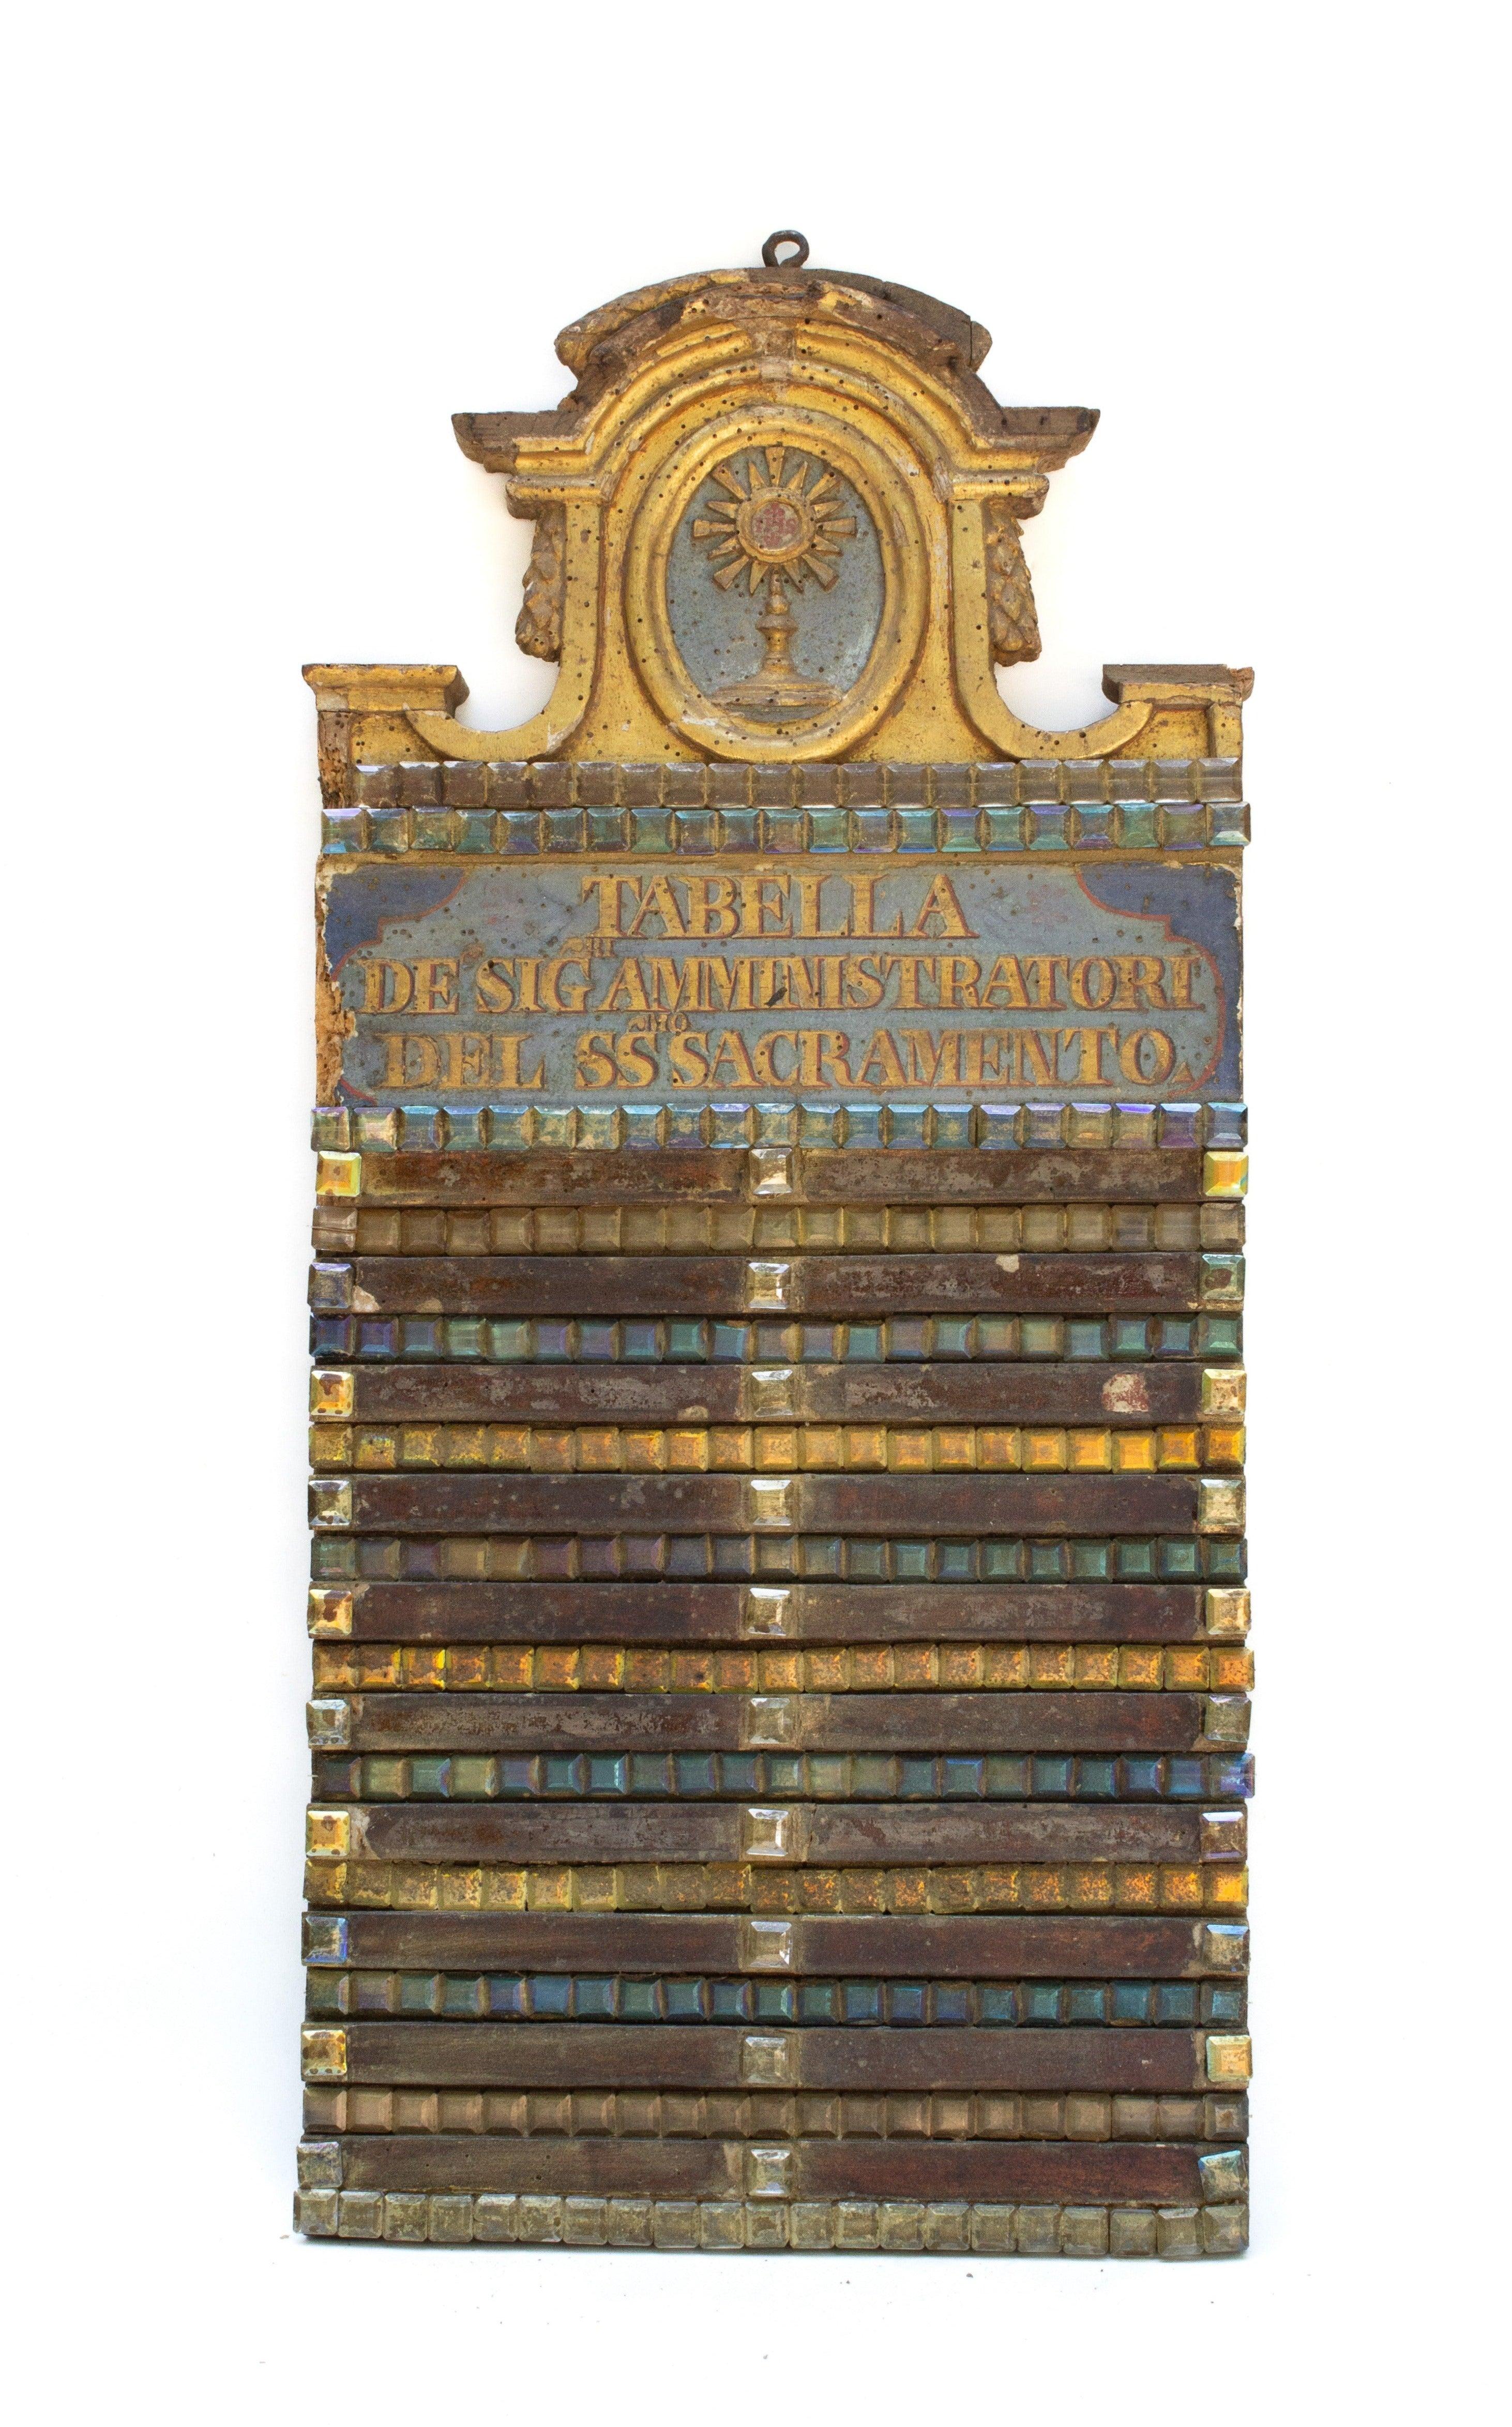 Italienische vergoldete Kirchentafel aus dem 18. Jahrhundert, die mit facettierten Diamanten verziert ist. Sie lautet: 